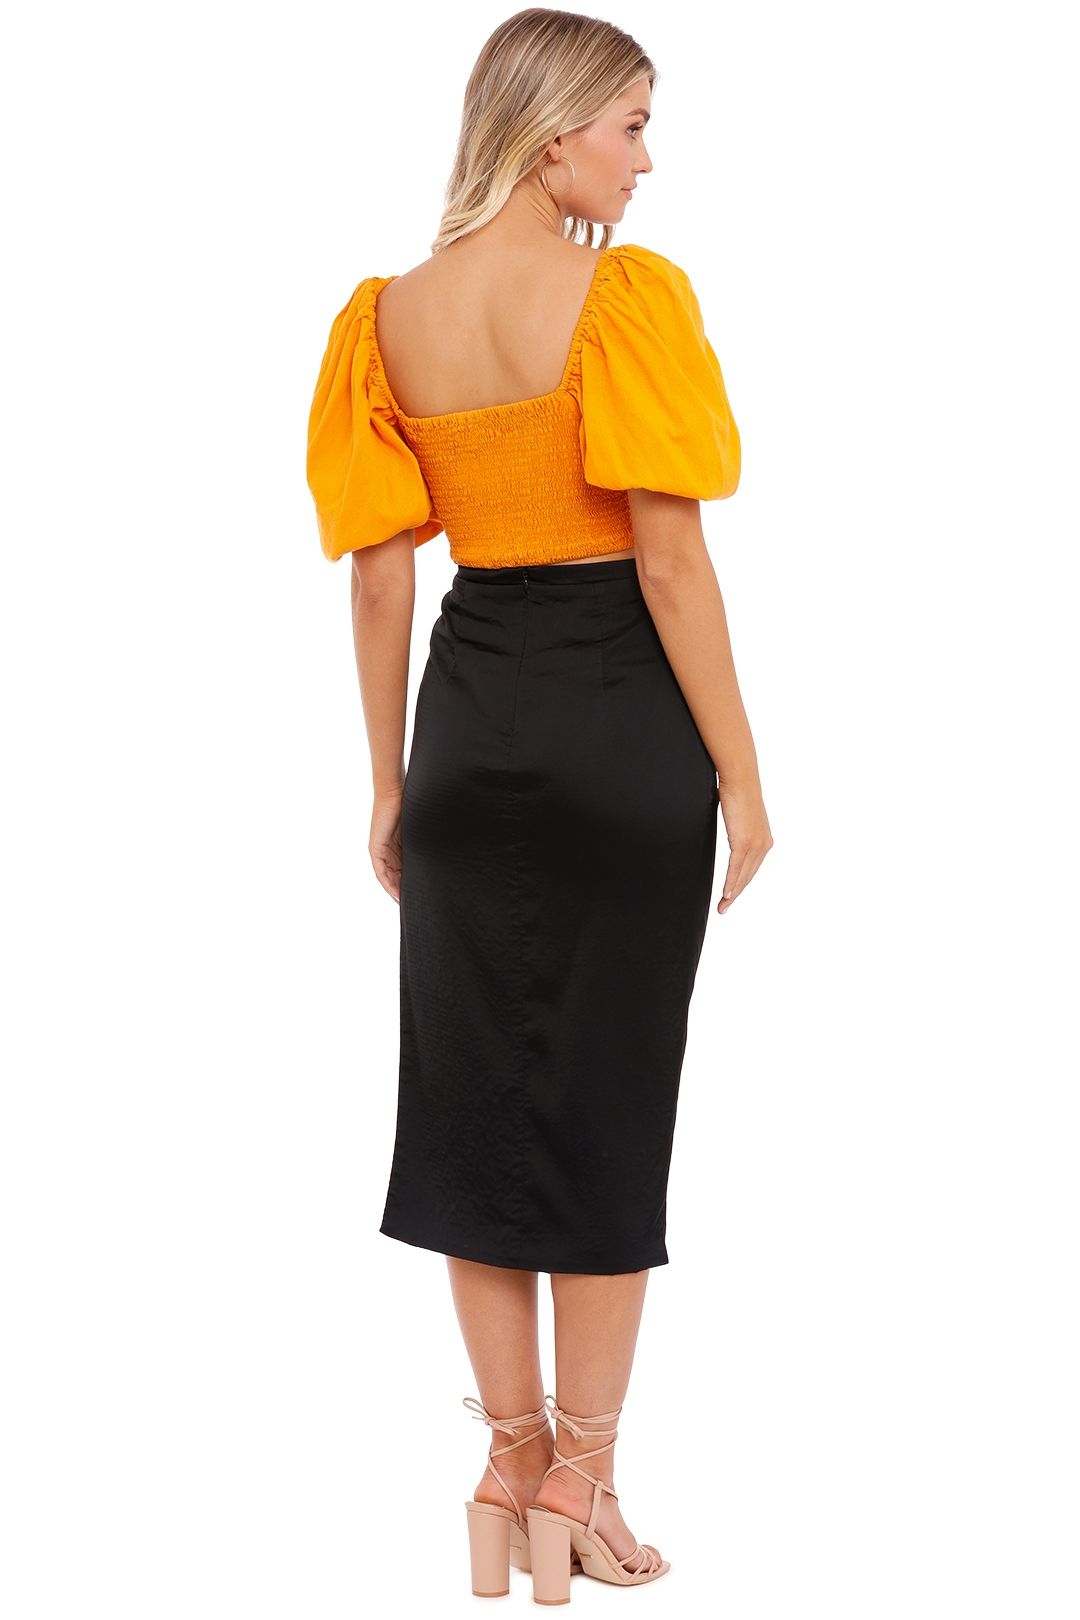 Manning Cartell Miami Heat Midi Skirt slit